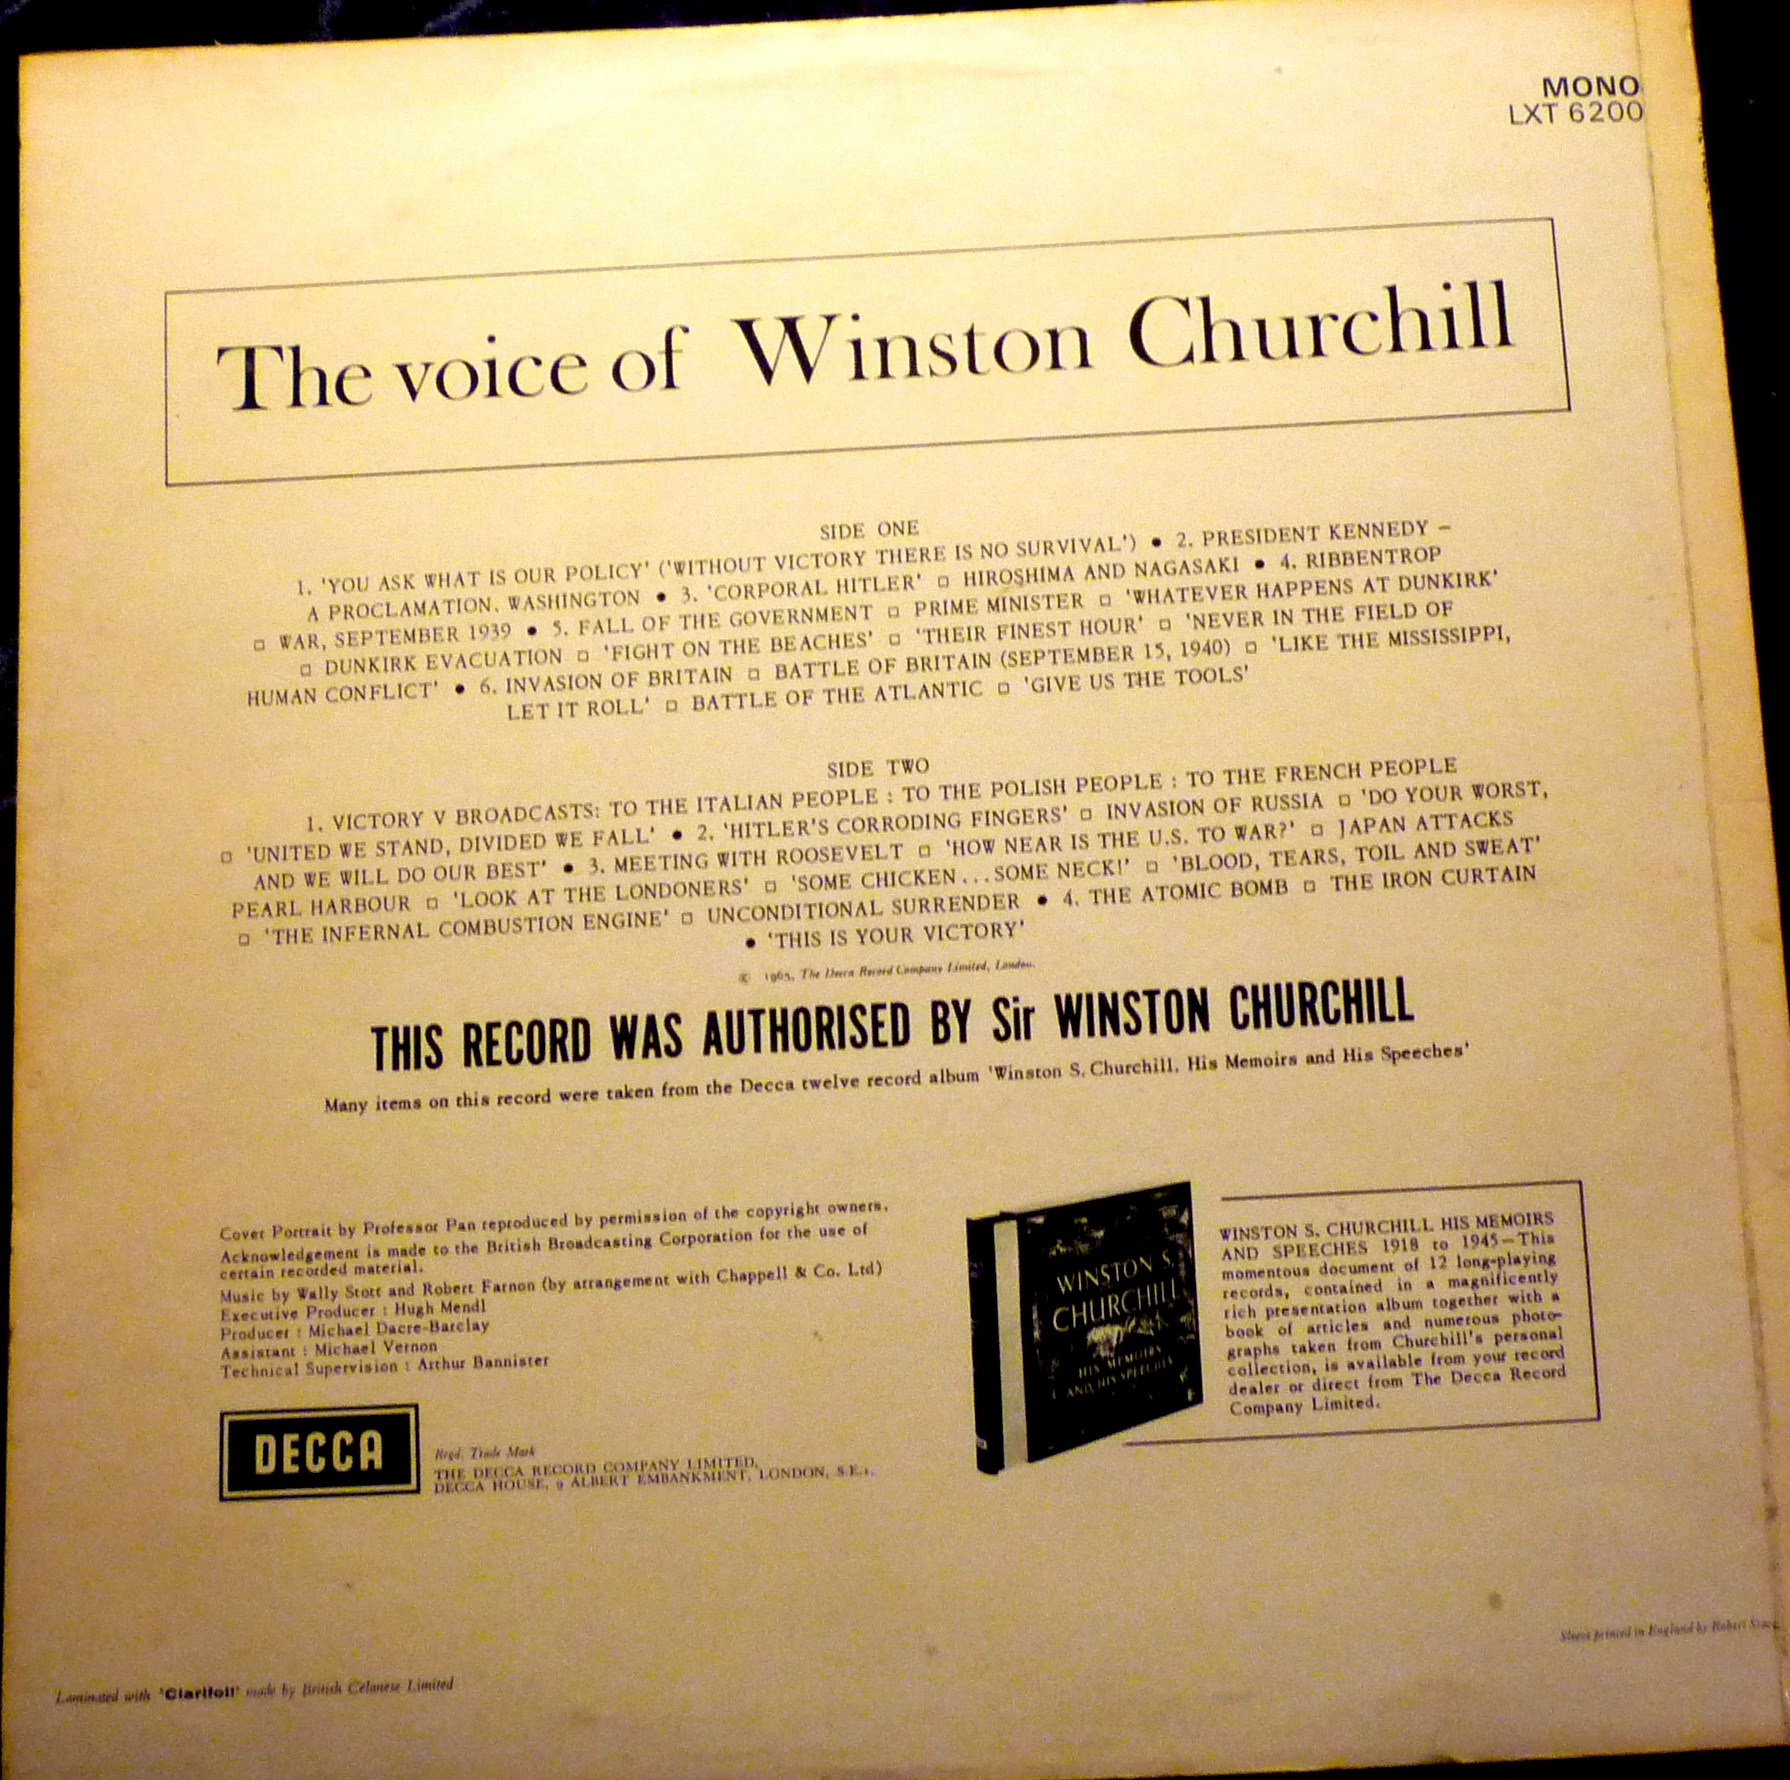 The Voice of Winston Churchill